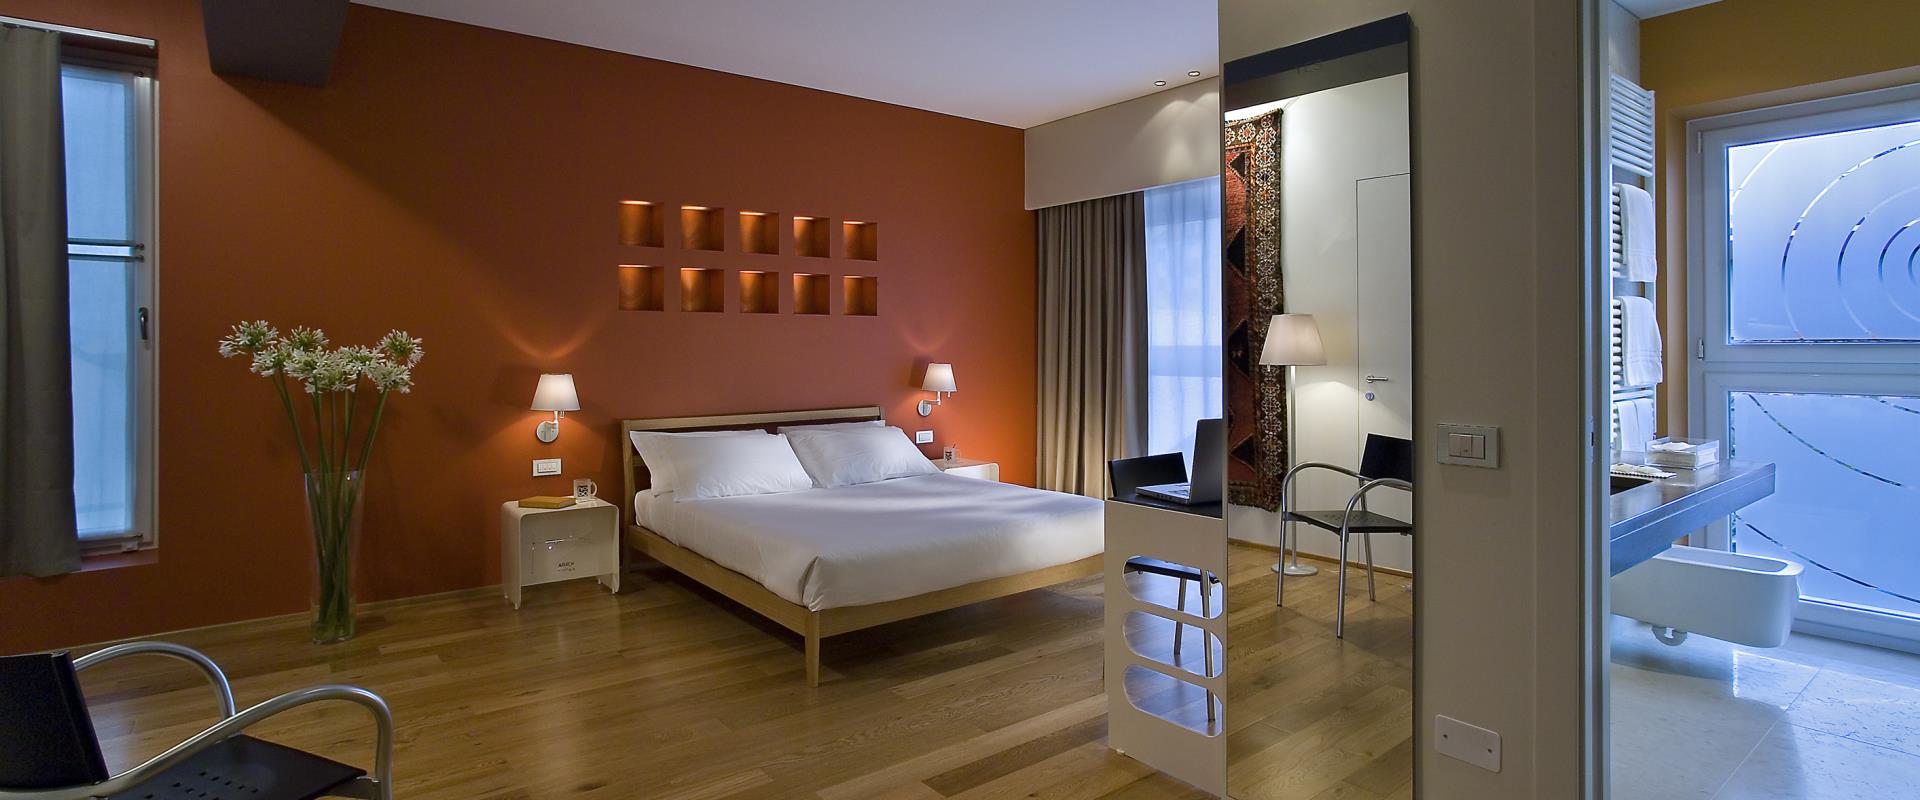 Scopri il comfort delle camere del BW Plus Hotel Bologna, 4 stelle vicino a venezia. Scegli la tipologia di camera più adatta a te!